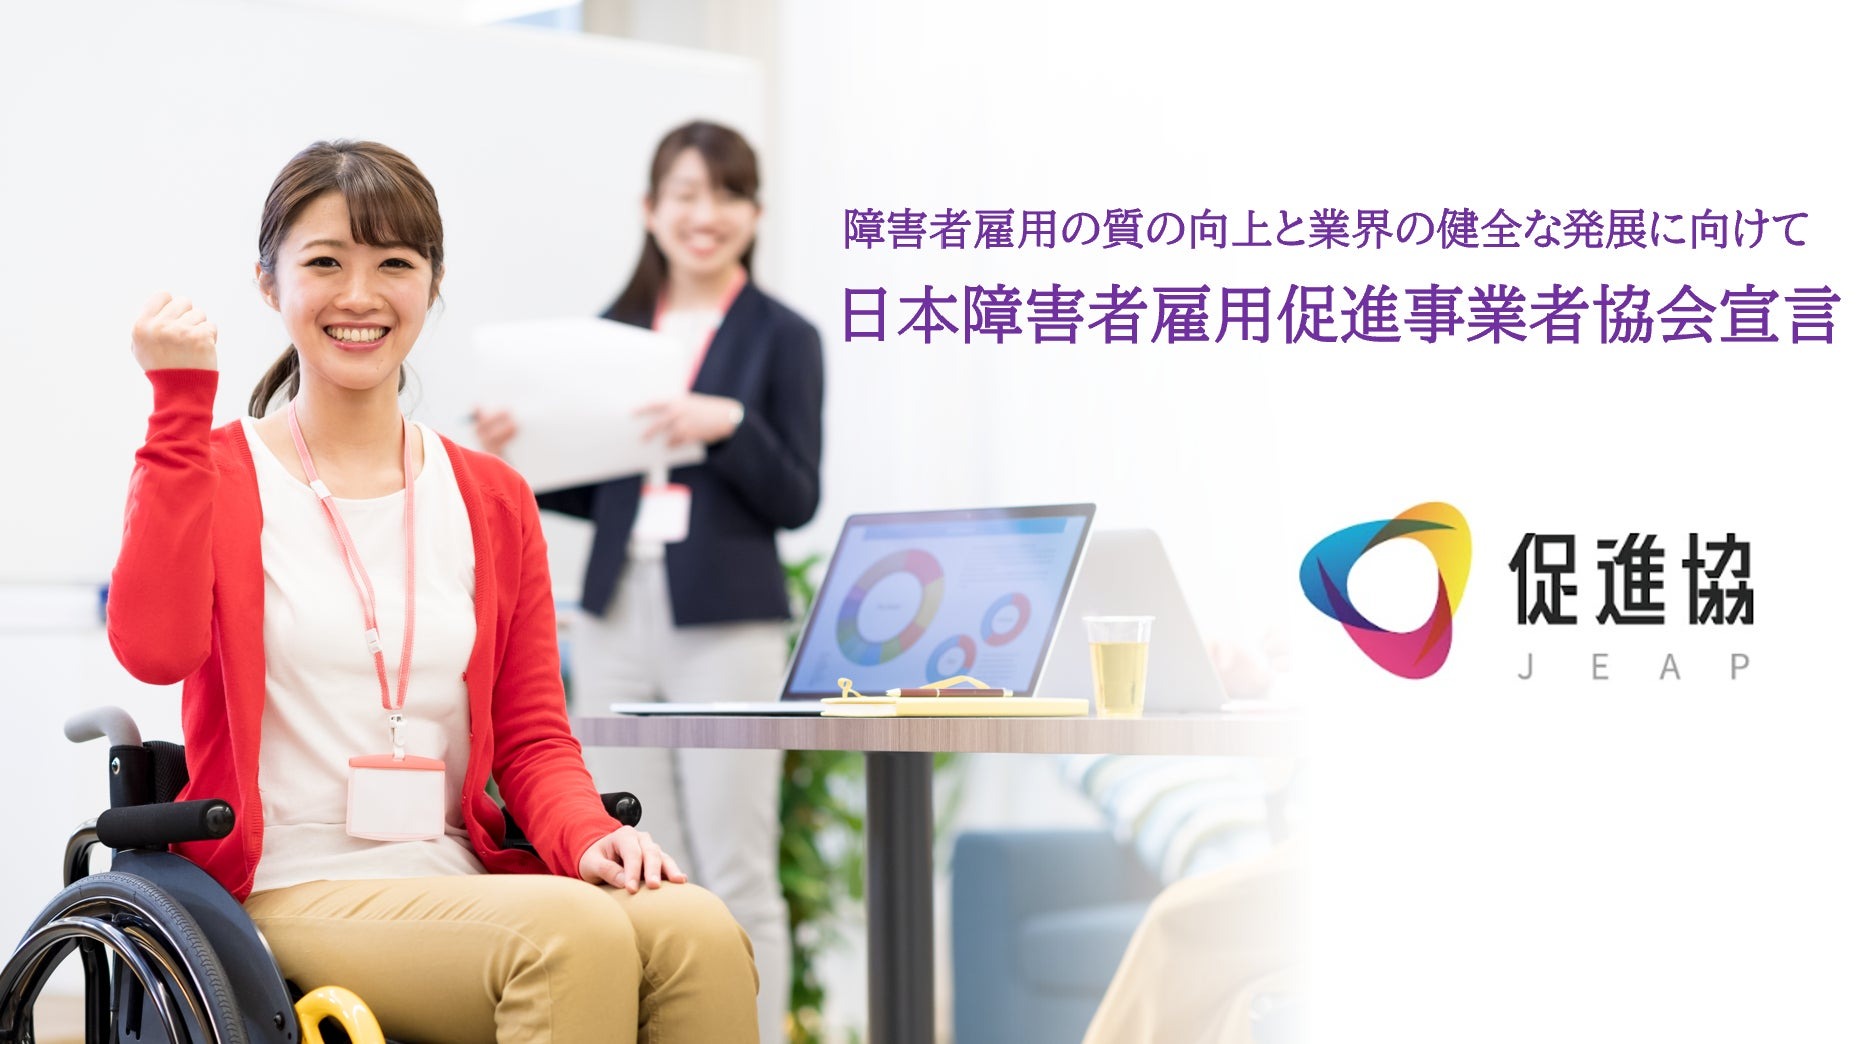 日本障害者雇用促進事業者協会宣言